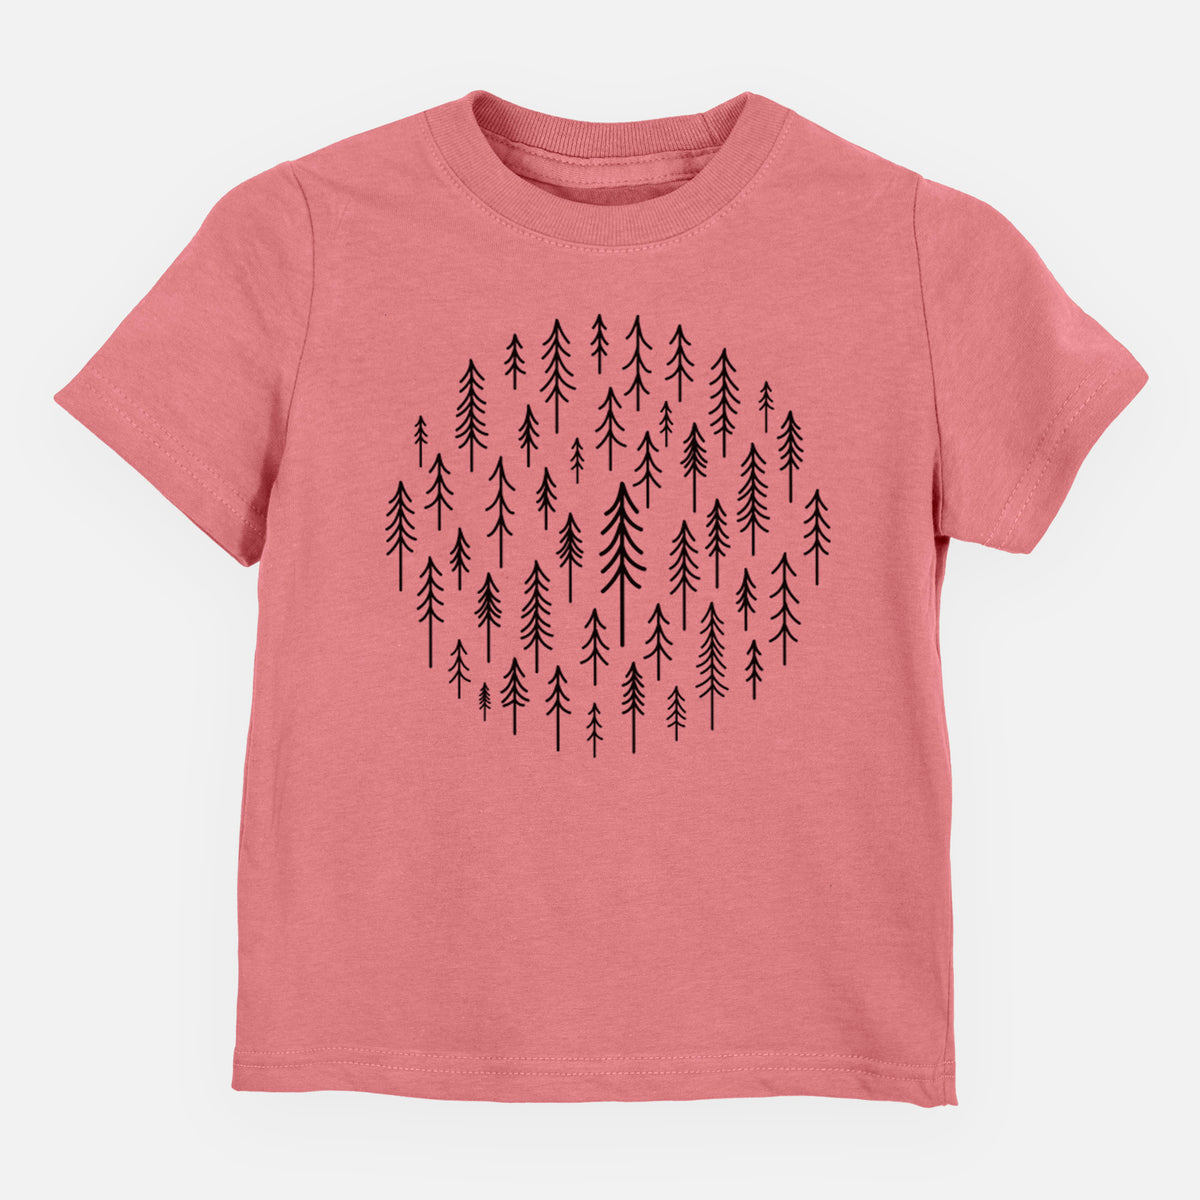 CIrcle of Trees - Kids Shirt